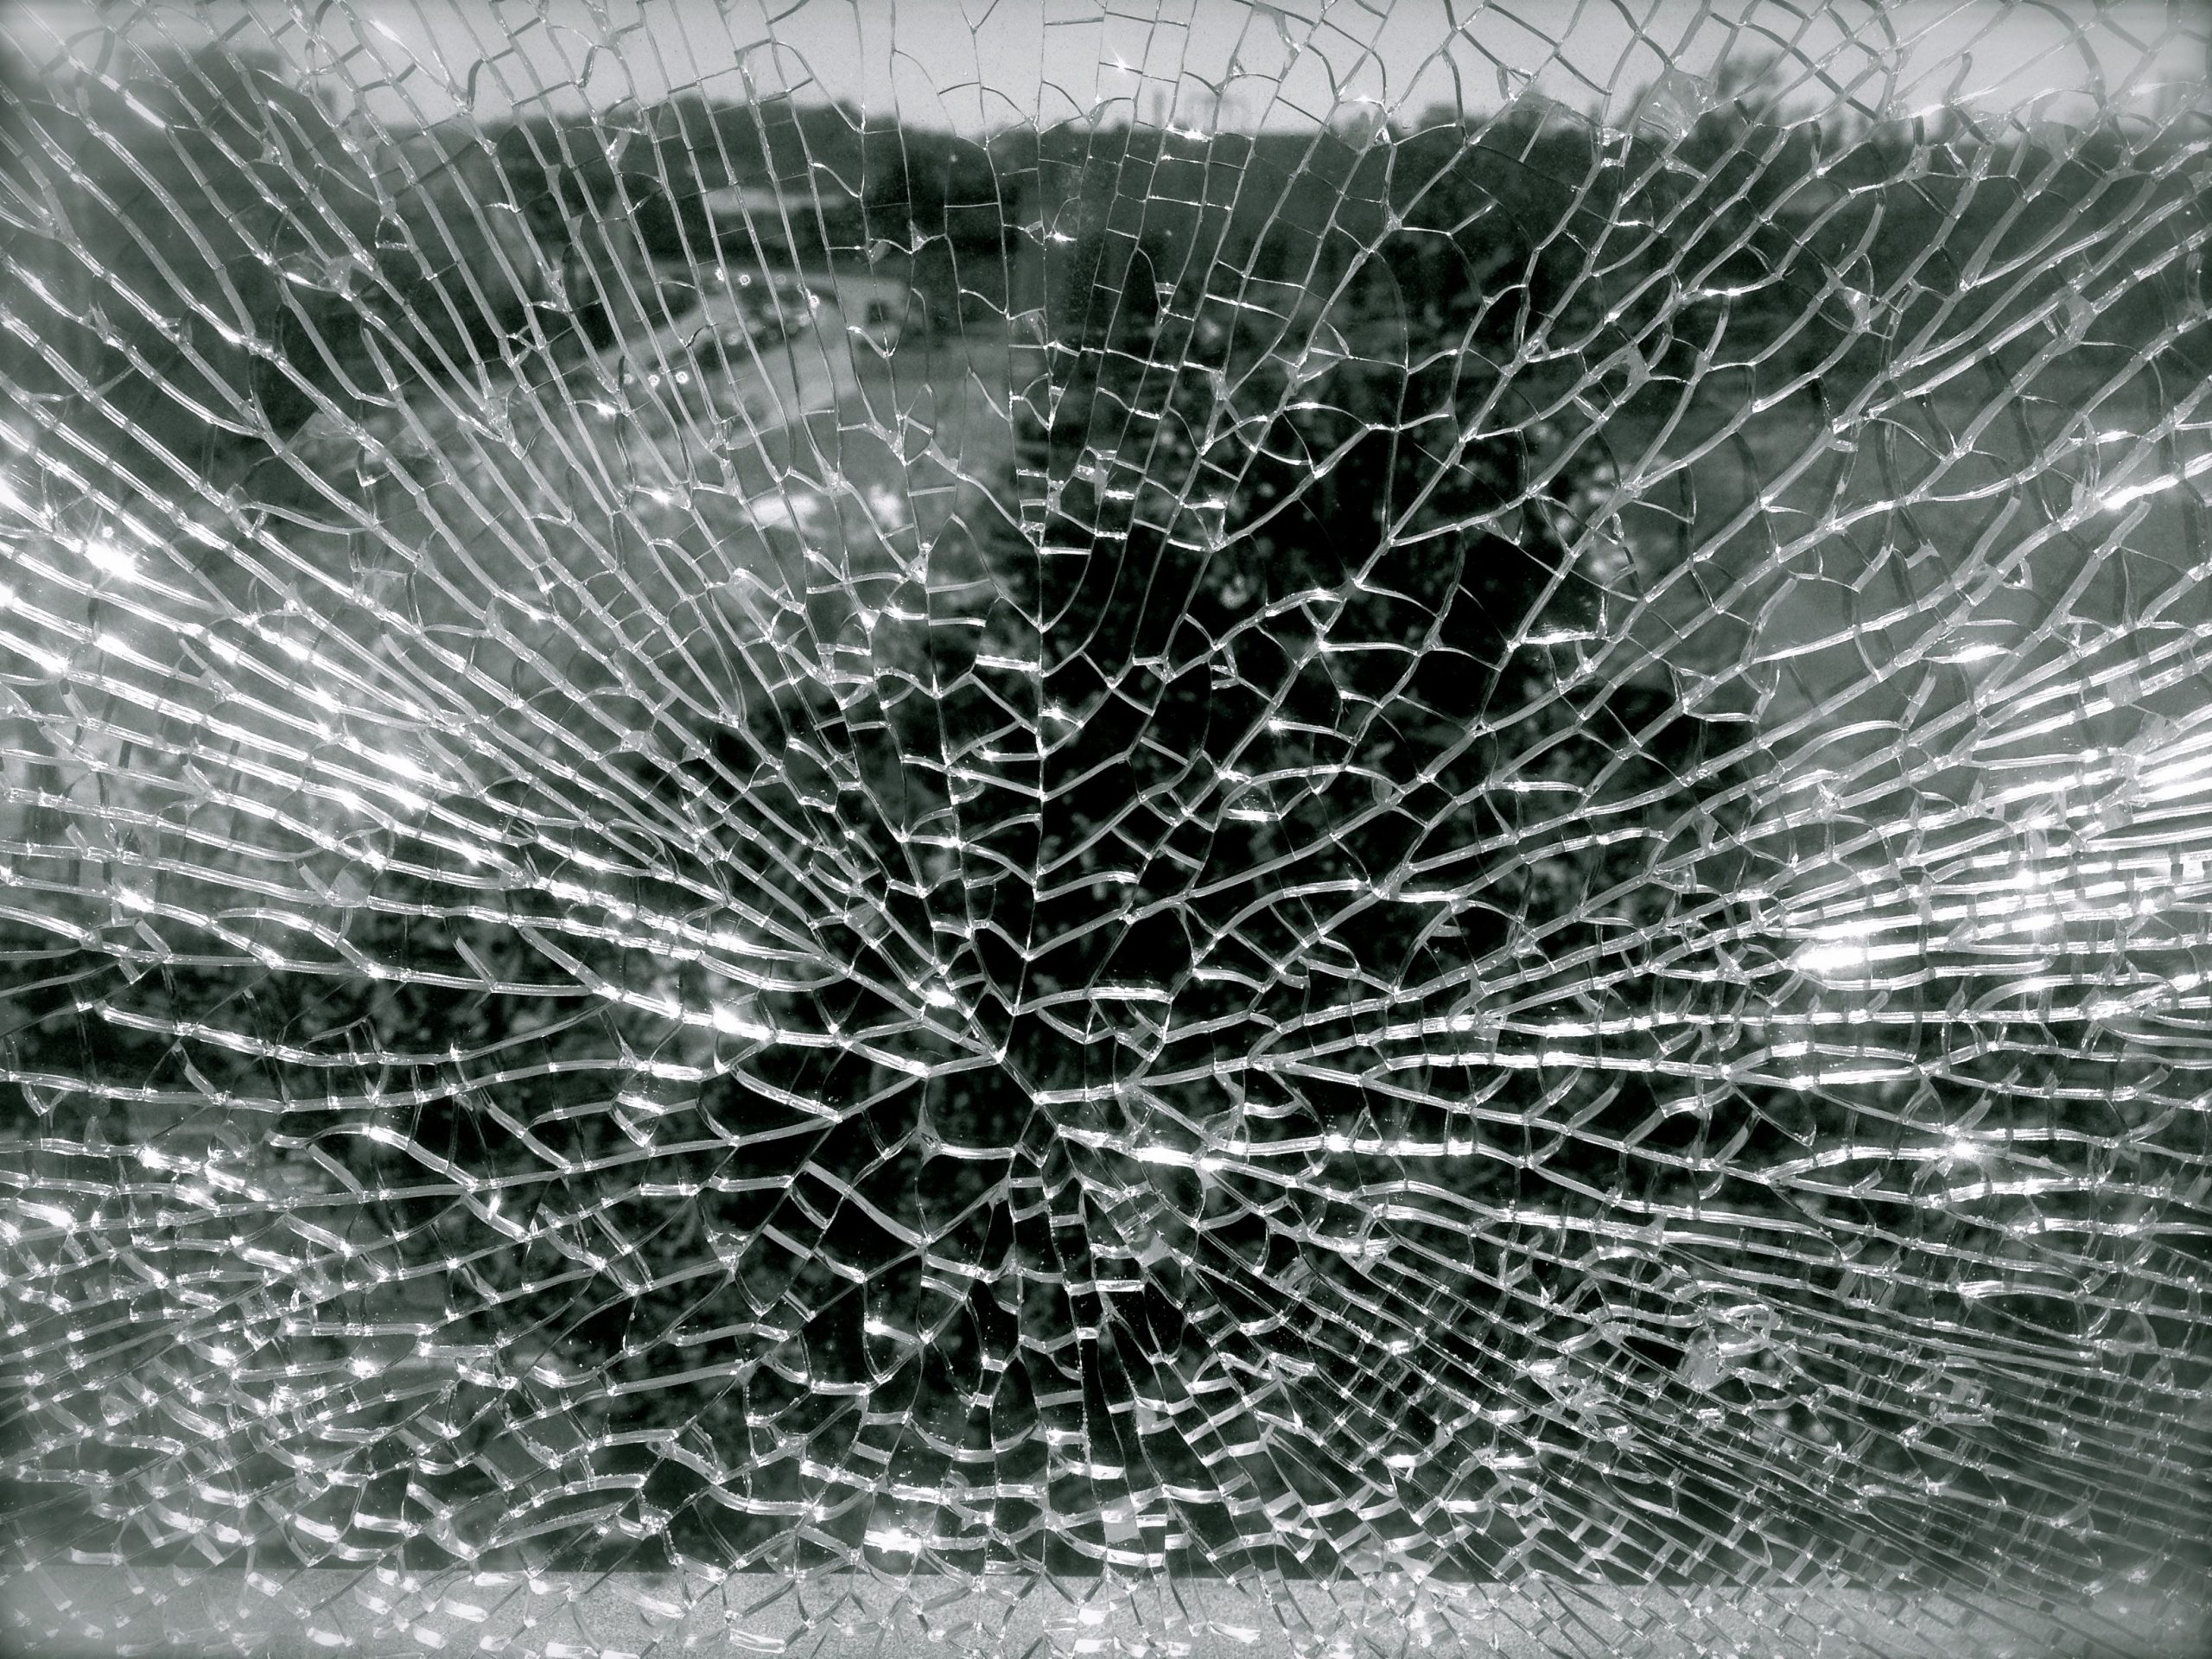 Broken window, from Flickr by Lynn Friedmann